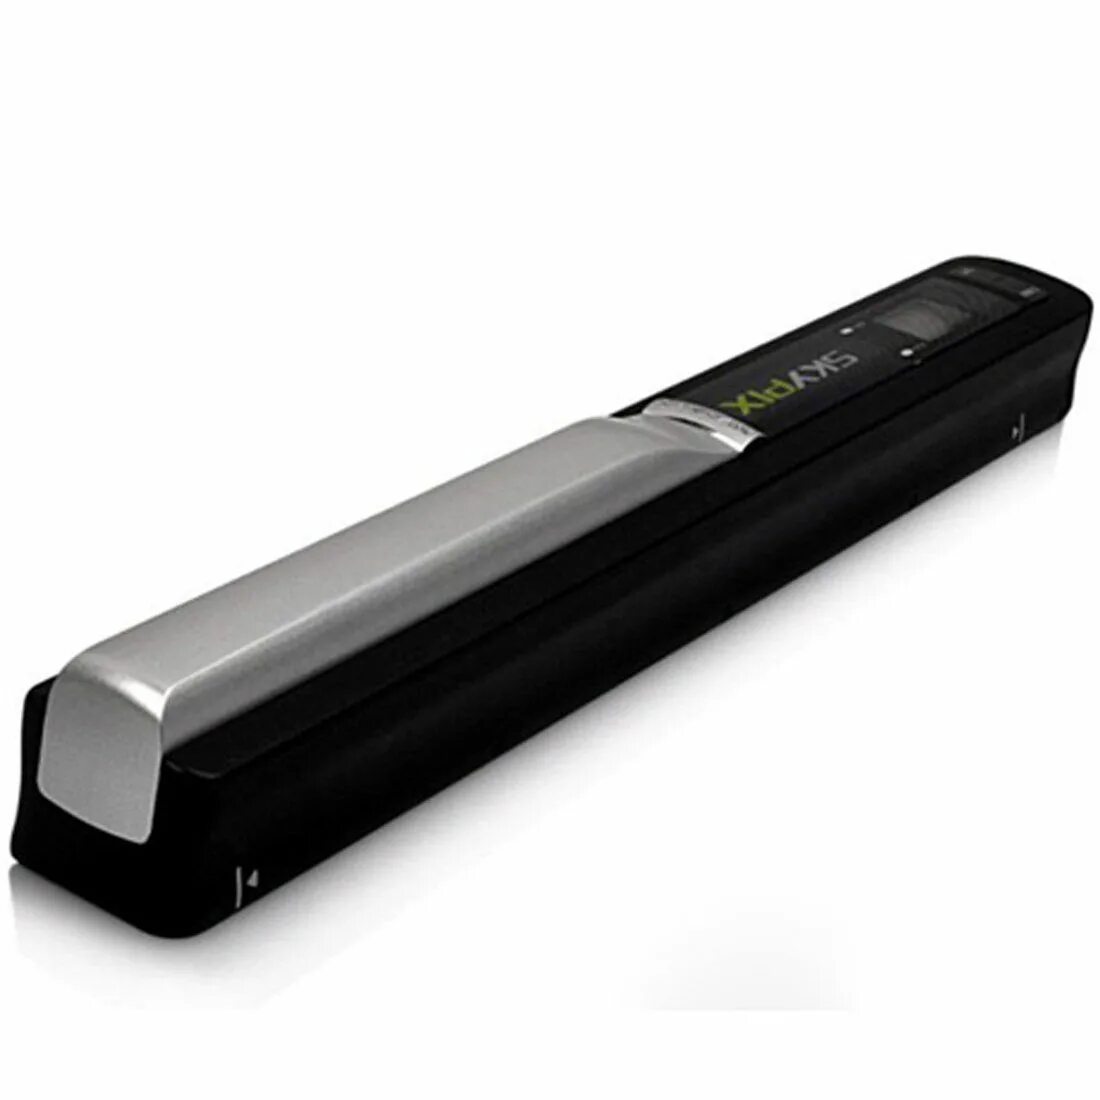 Портативный ручной сканер. Сканер skypix tsn410. Портативный ручной сканер skypix. Portable Scanner TSN-410. Интерфейс ручного сканера.